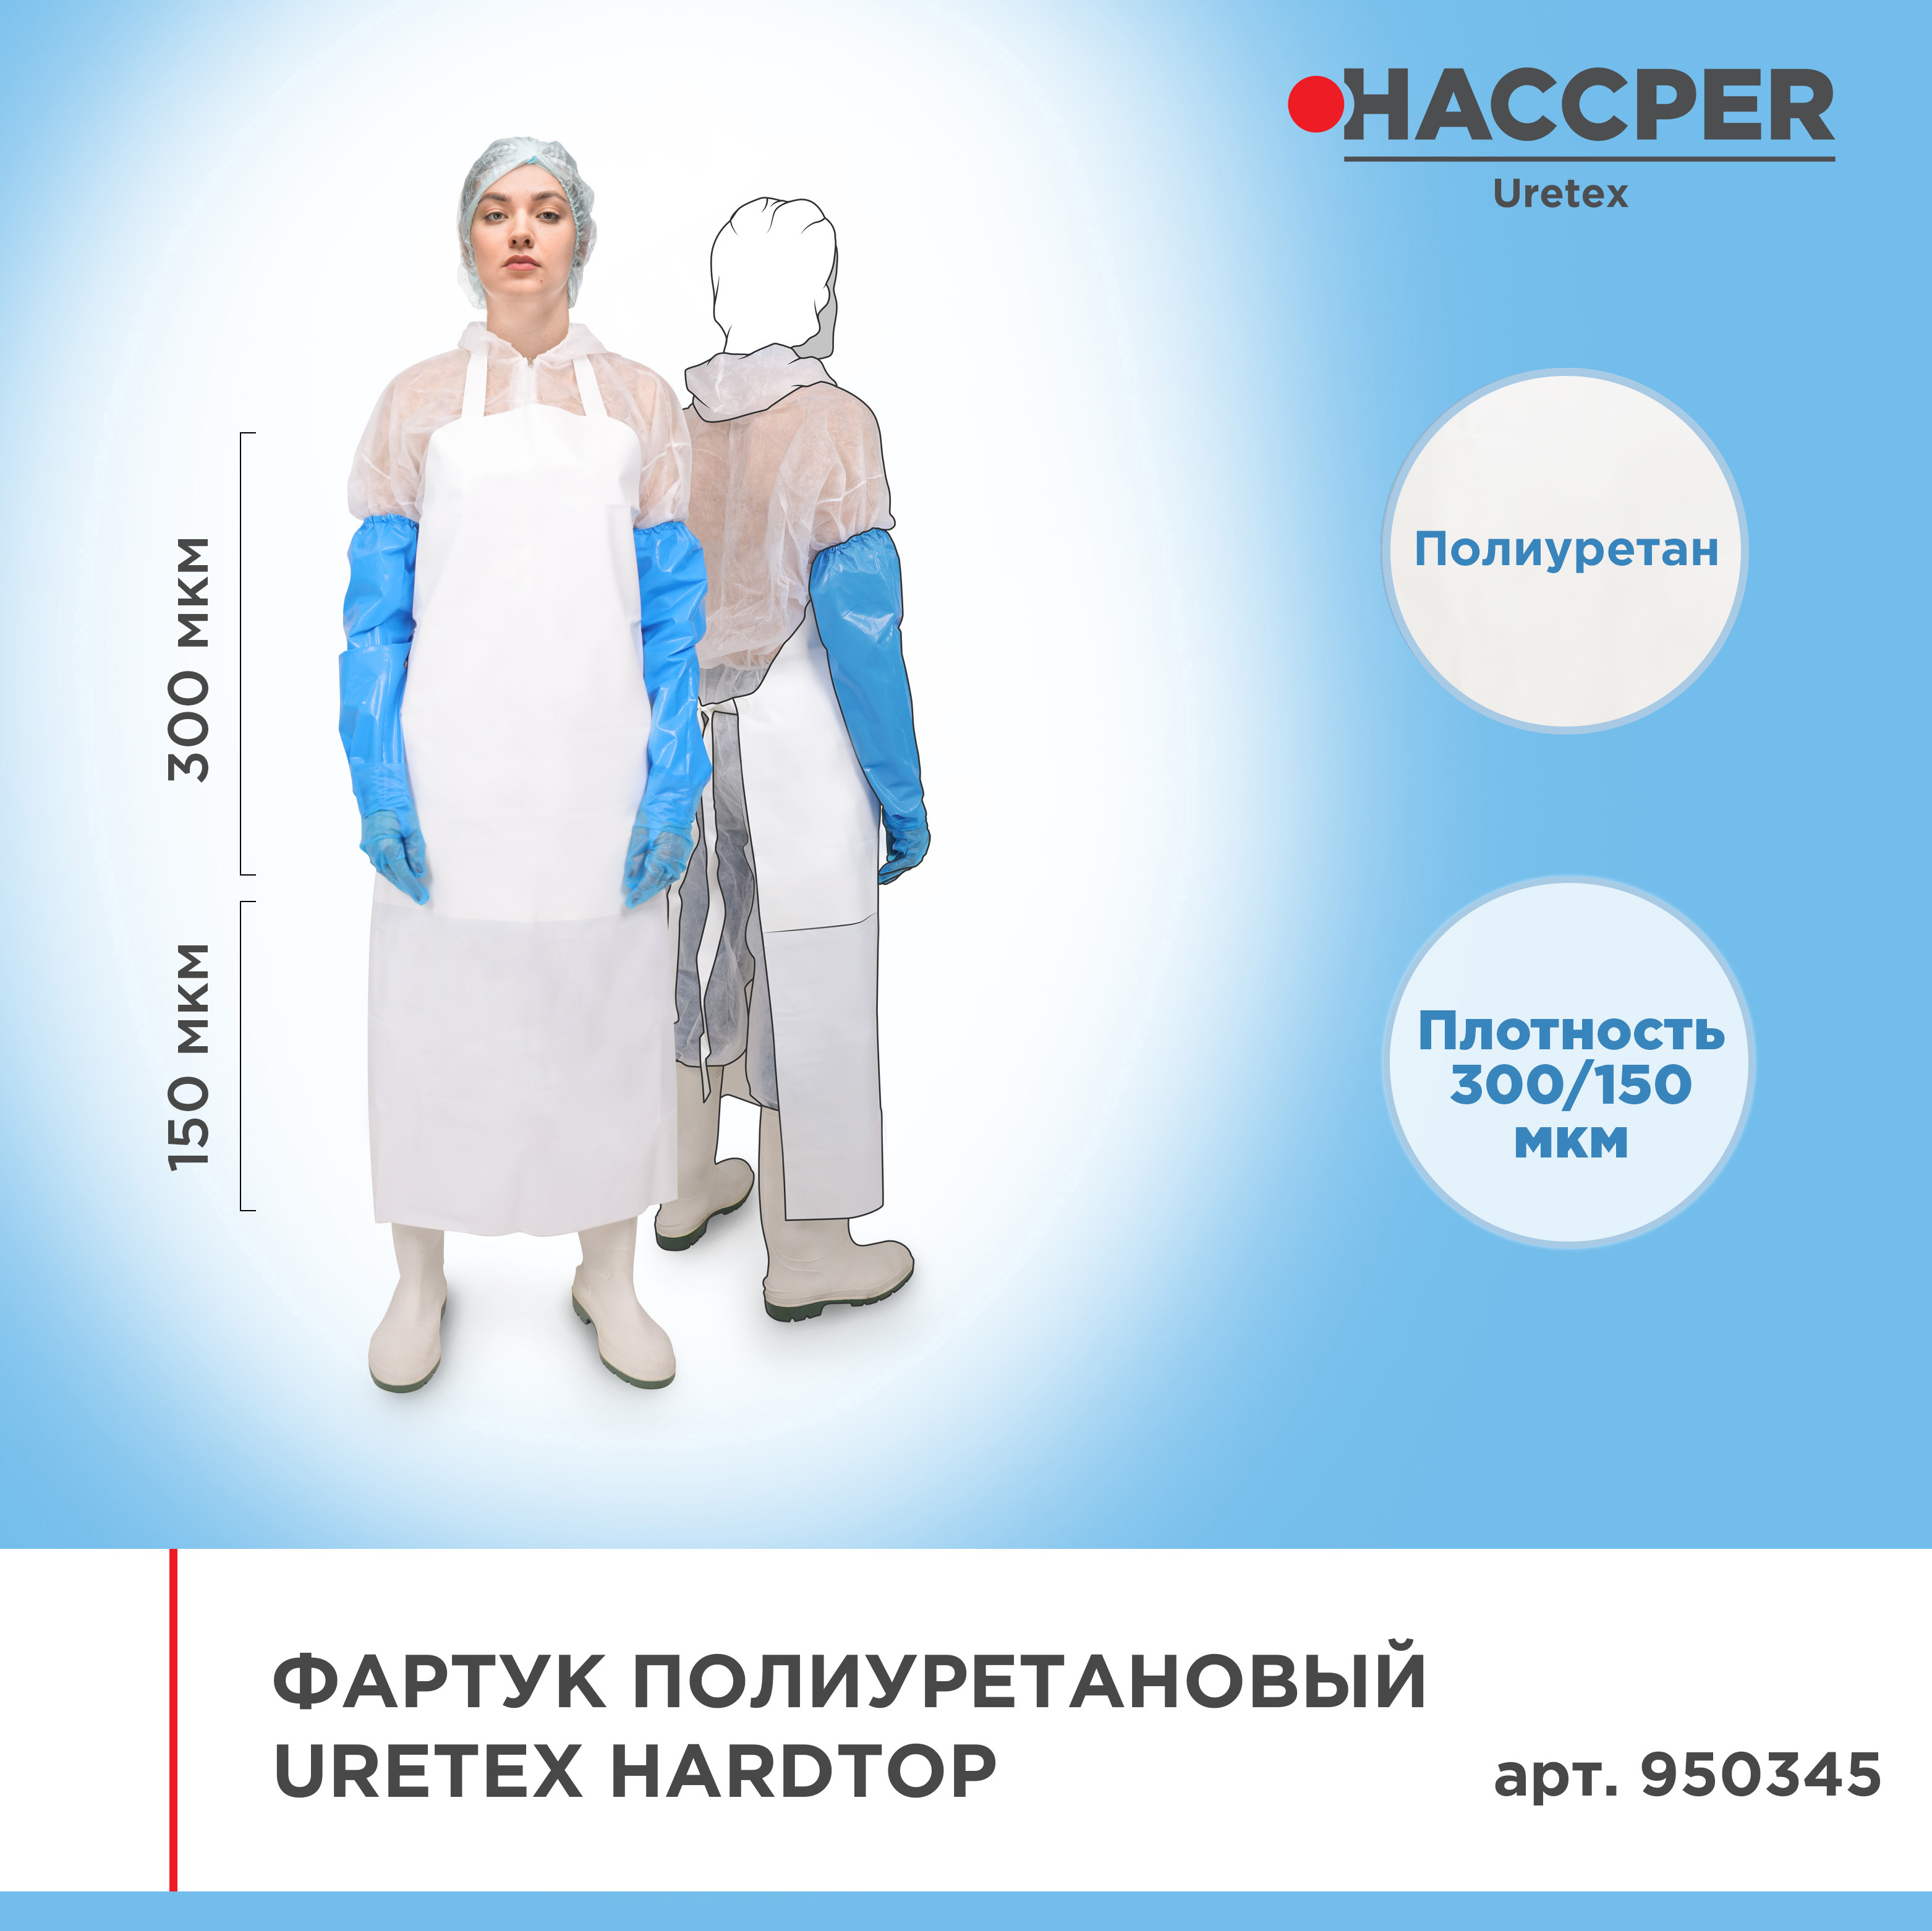 Фартук полиуретановый многоразовый HACCPER Uretex HARDTOP 1210х890мм, 300/150мкм, белый